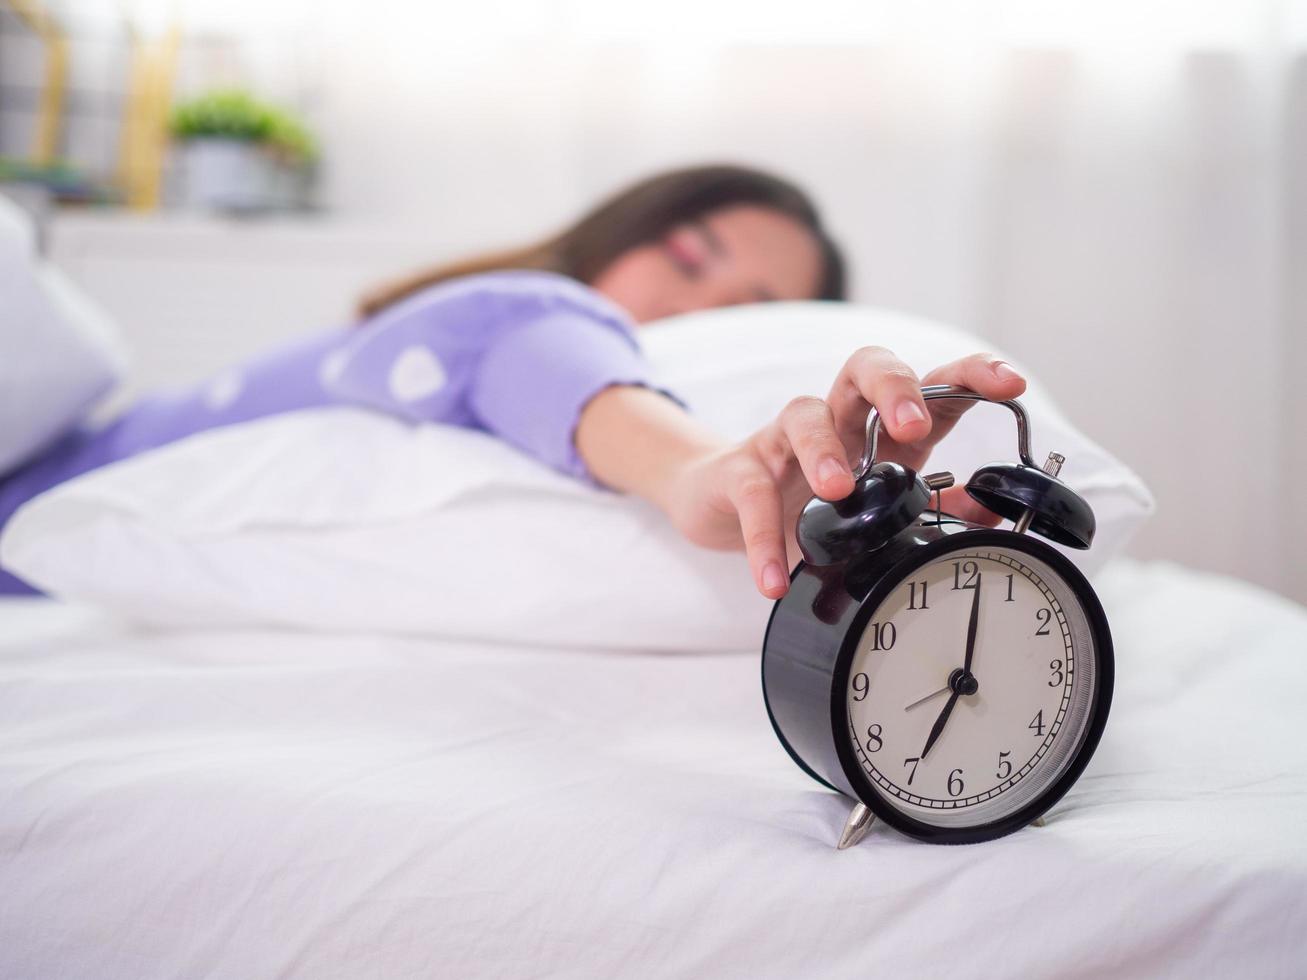 la femme endormie dormant dans son lit, utilisant la main pour appuyer sur le réveil le matin. bonjour un jour paresseux photo